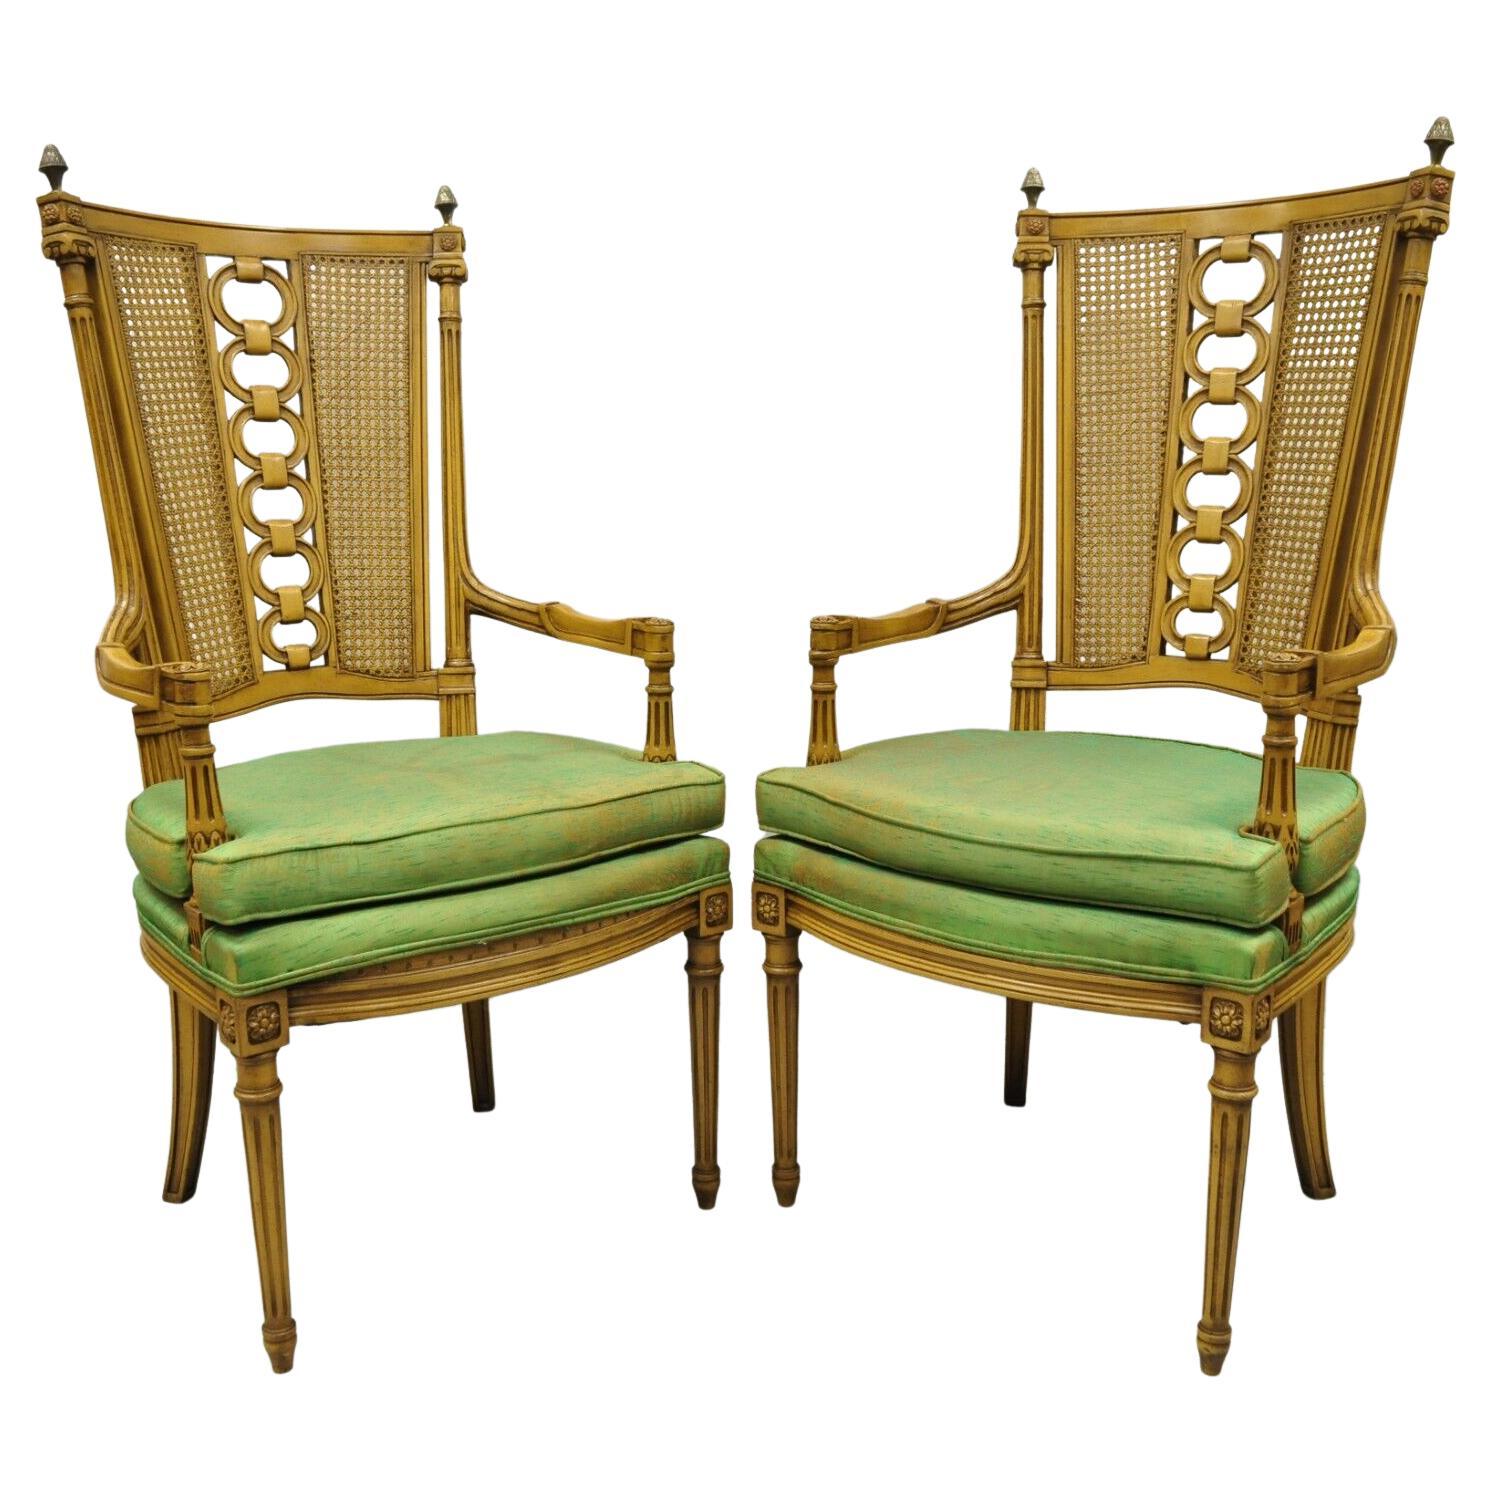 Vintage Französisch Hollywood Regency hohe Rohrstock zurück geschnitzt Link Stühle, ein Paar